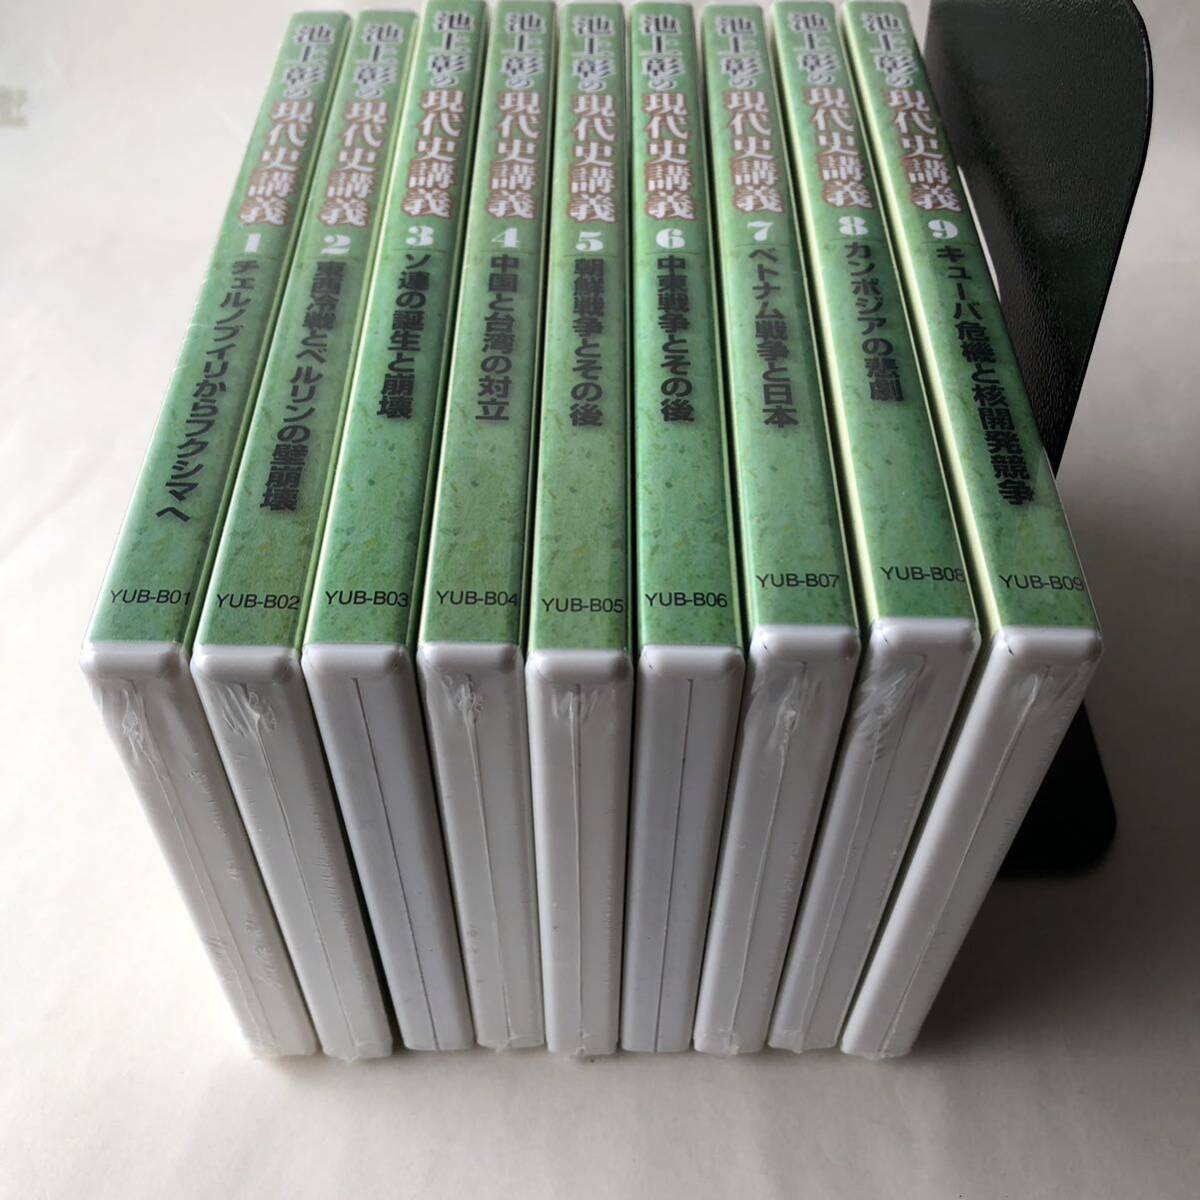 ^ DVD нераспечатанный 7 листов / Ikegami .. настоящее время история .. You can все 9 шт / все тома в комплекте DVD-BOX 419